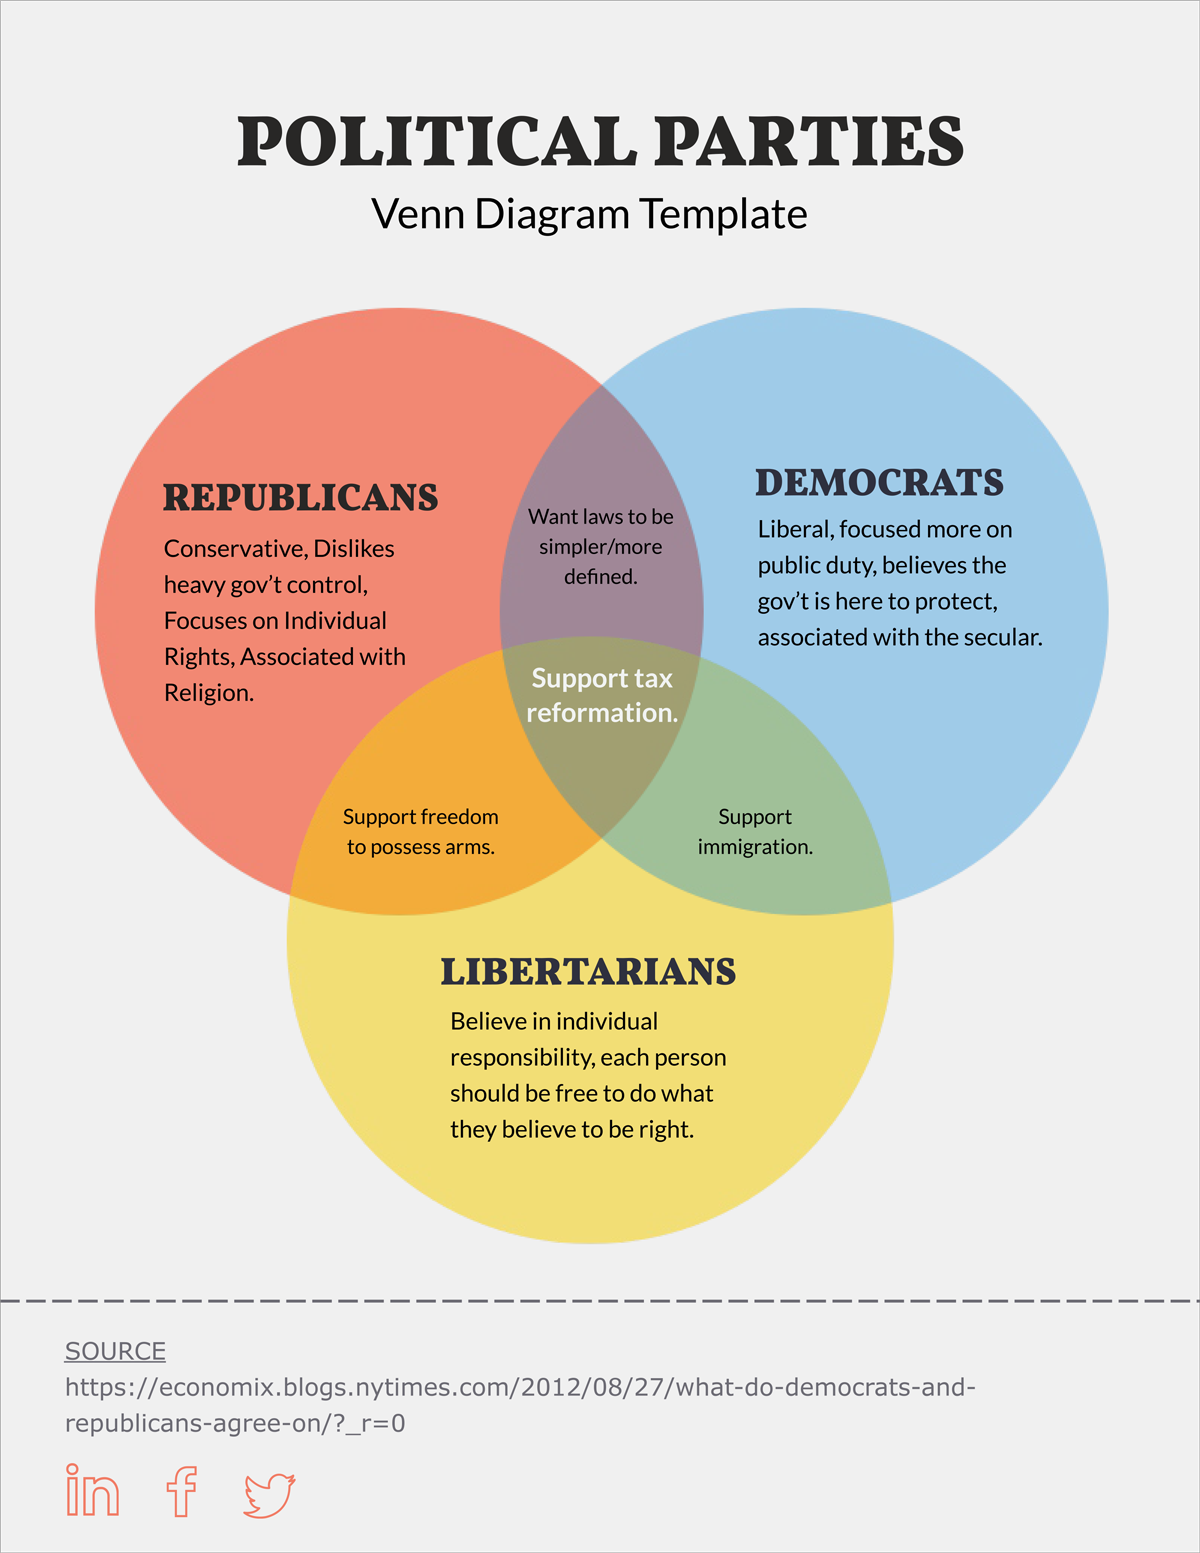 democrats vs republicans venn diagram